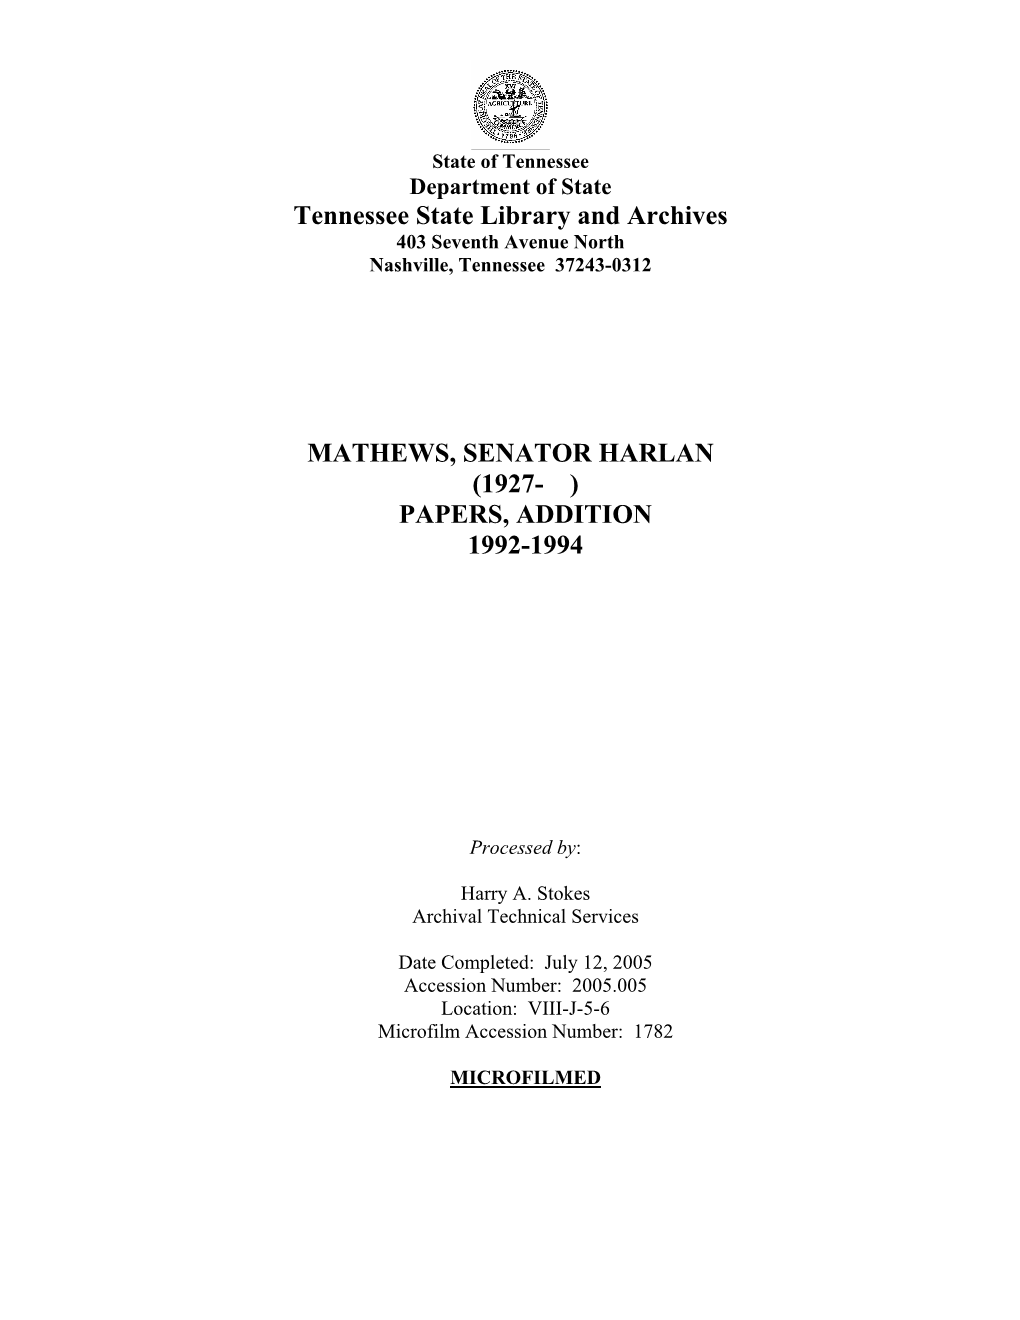 U.S. Sen. Harlan Mathews Papers, Addition, 1992-1994